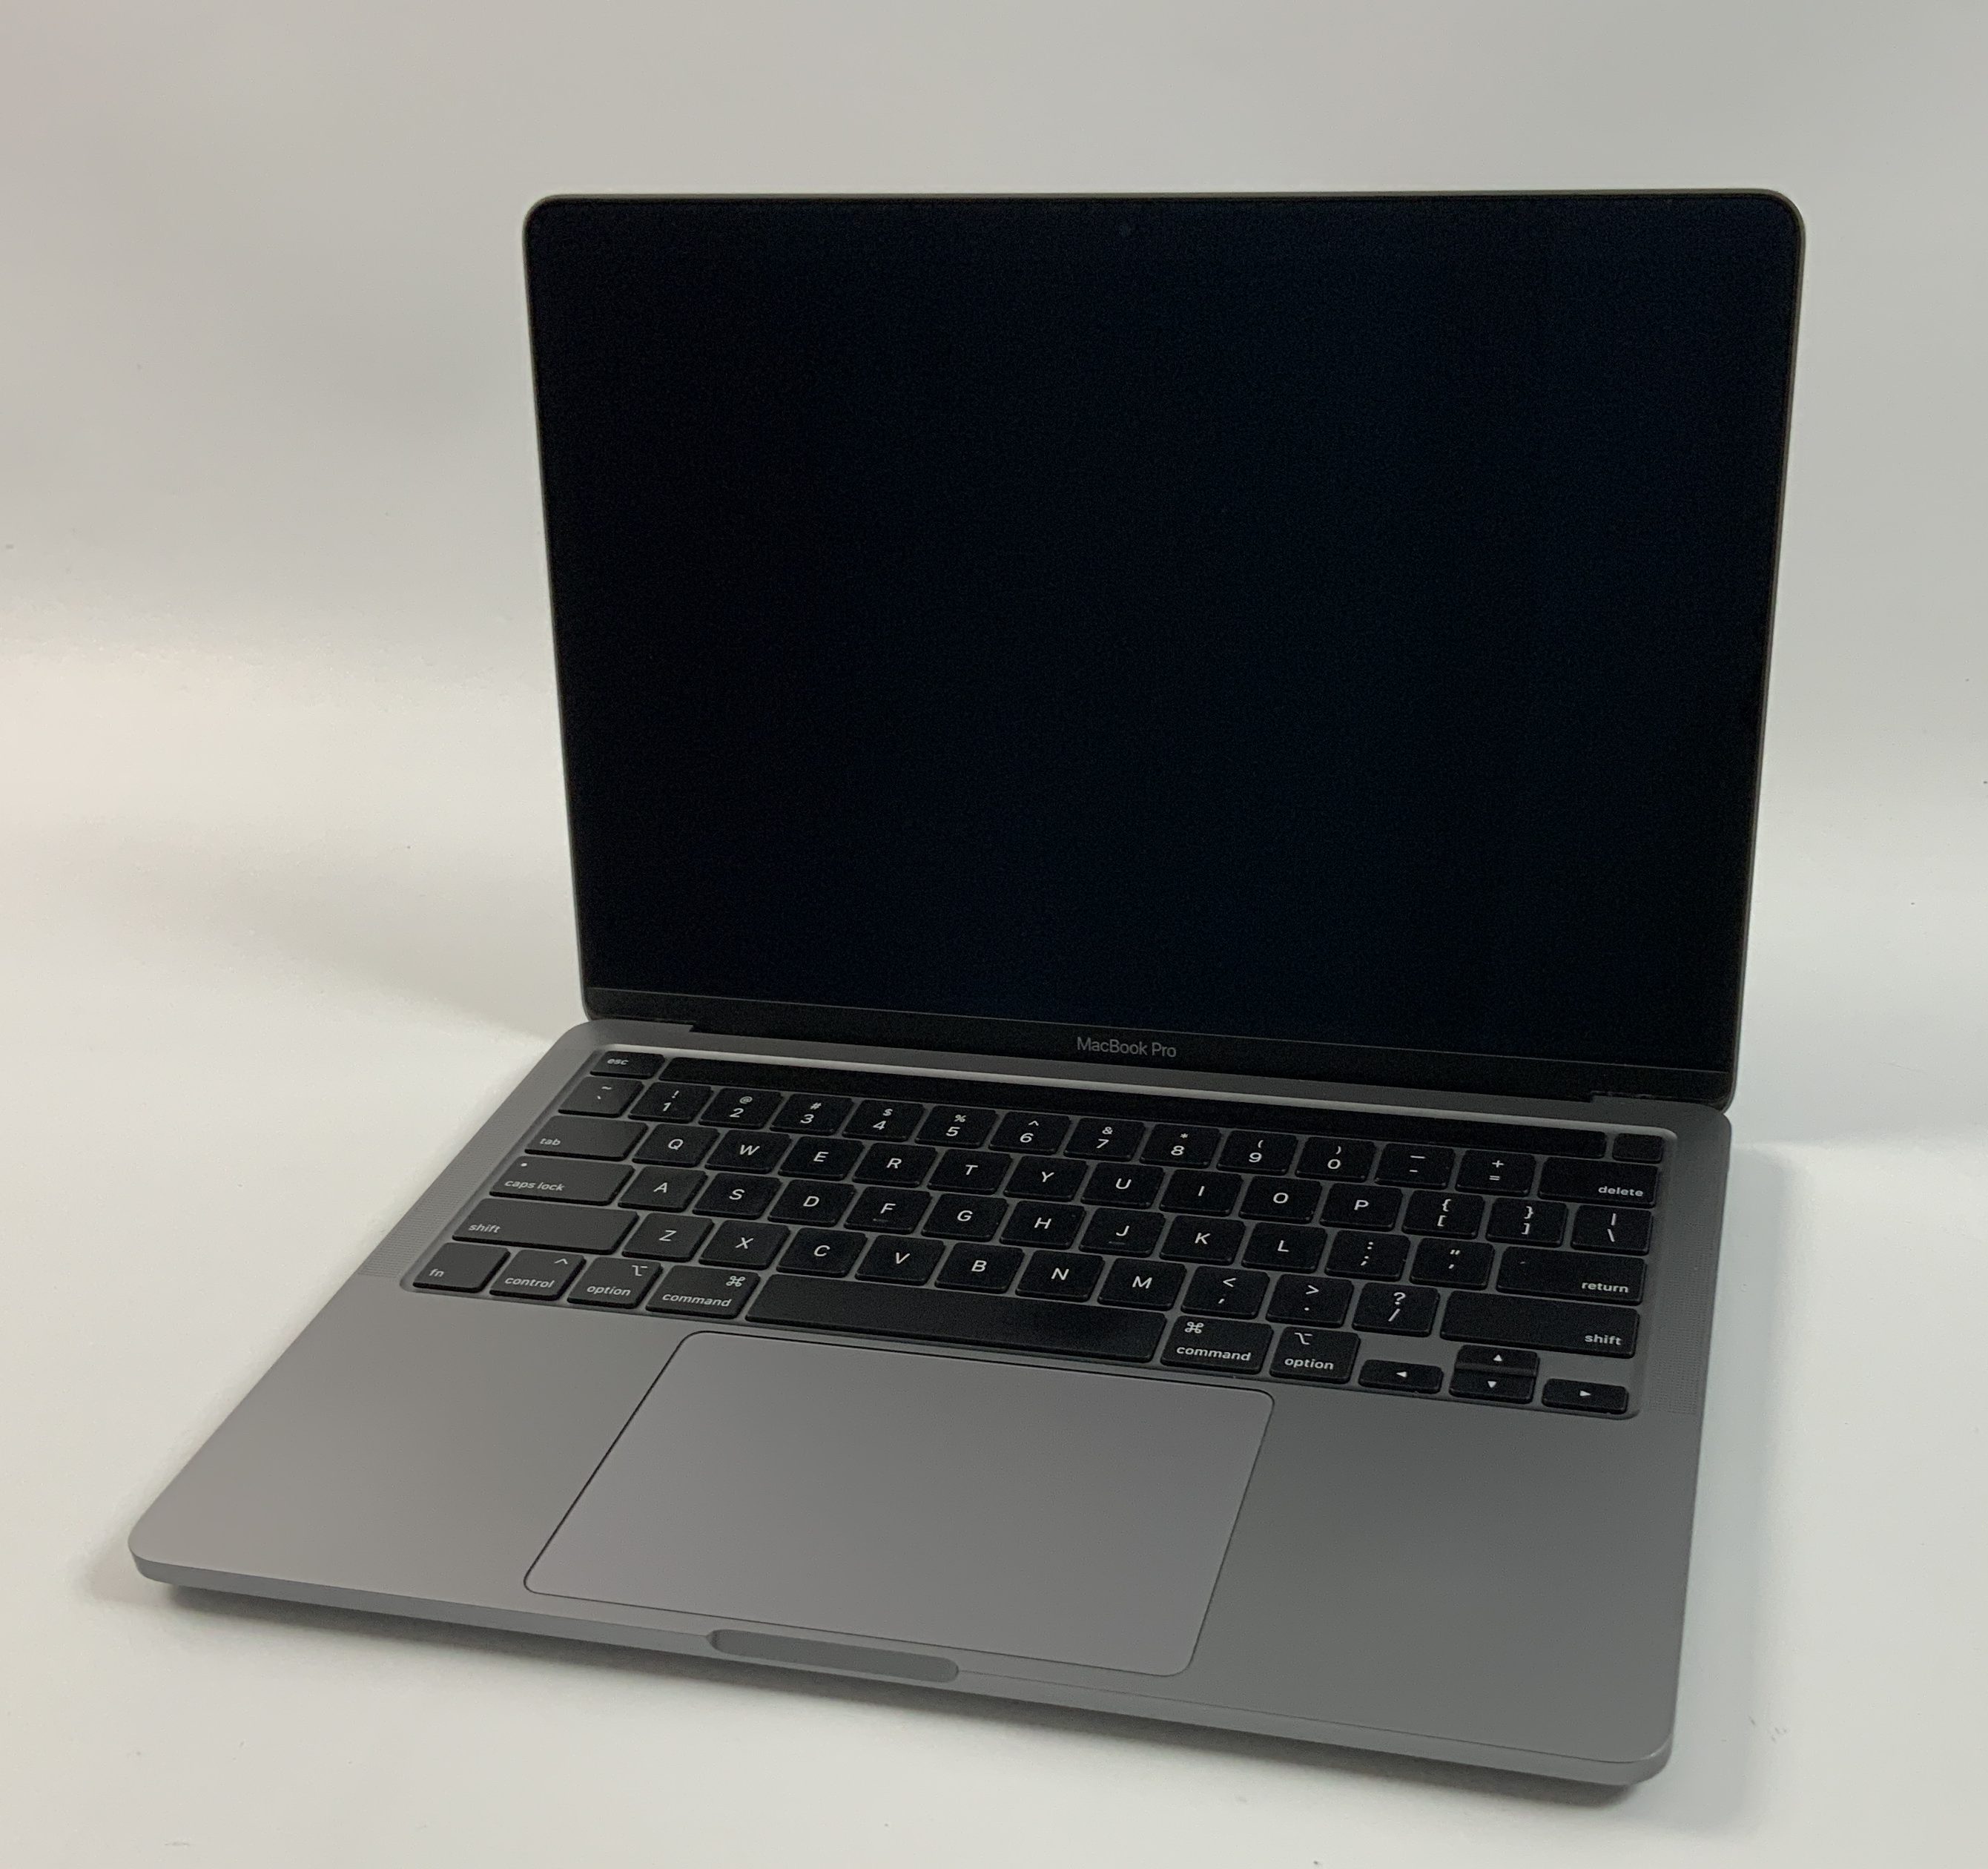 MacBook Pro 13" 4TBT Mid 2020 (Intel Quad-Core i5 2.0 GHz 16 GB RAM 512 GB SSD), Space Gray, Intel Quad-Core i5 2.0 GHz, 16 GB RAM, 512 GB SSD, obraz 1